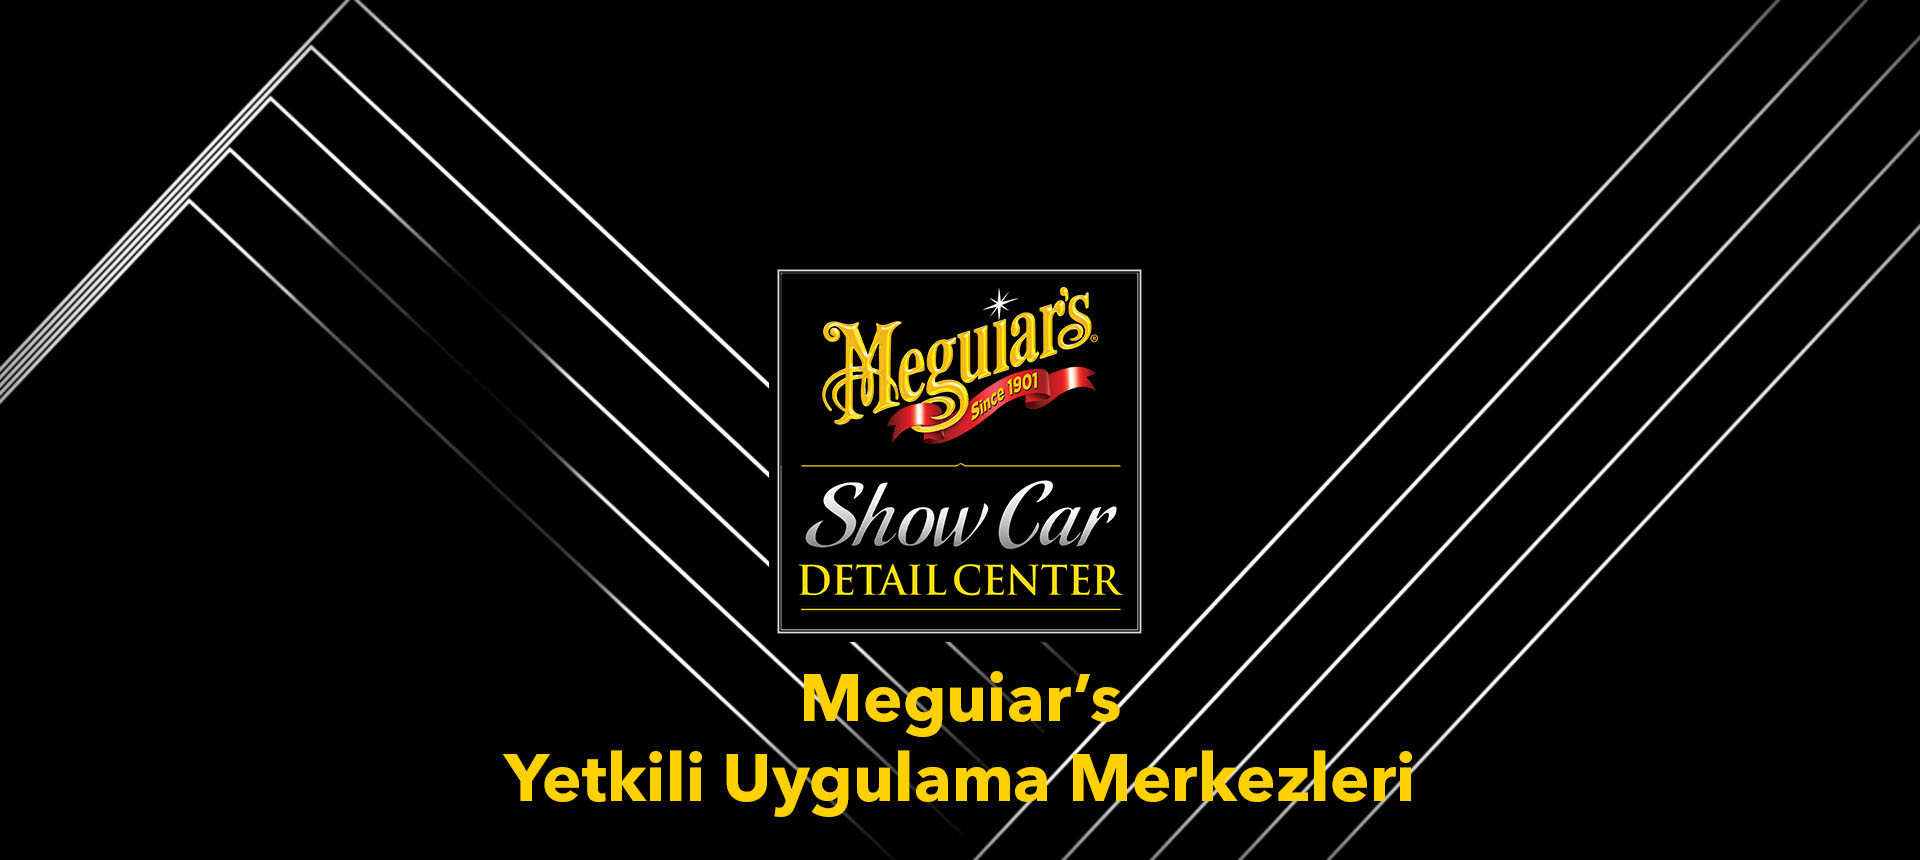 Meguiars-Turkiye-Yetkili-Uygulama-Merkezleri.jpg (186 KB)